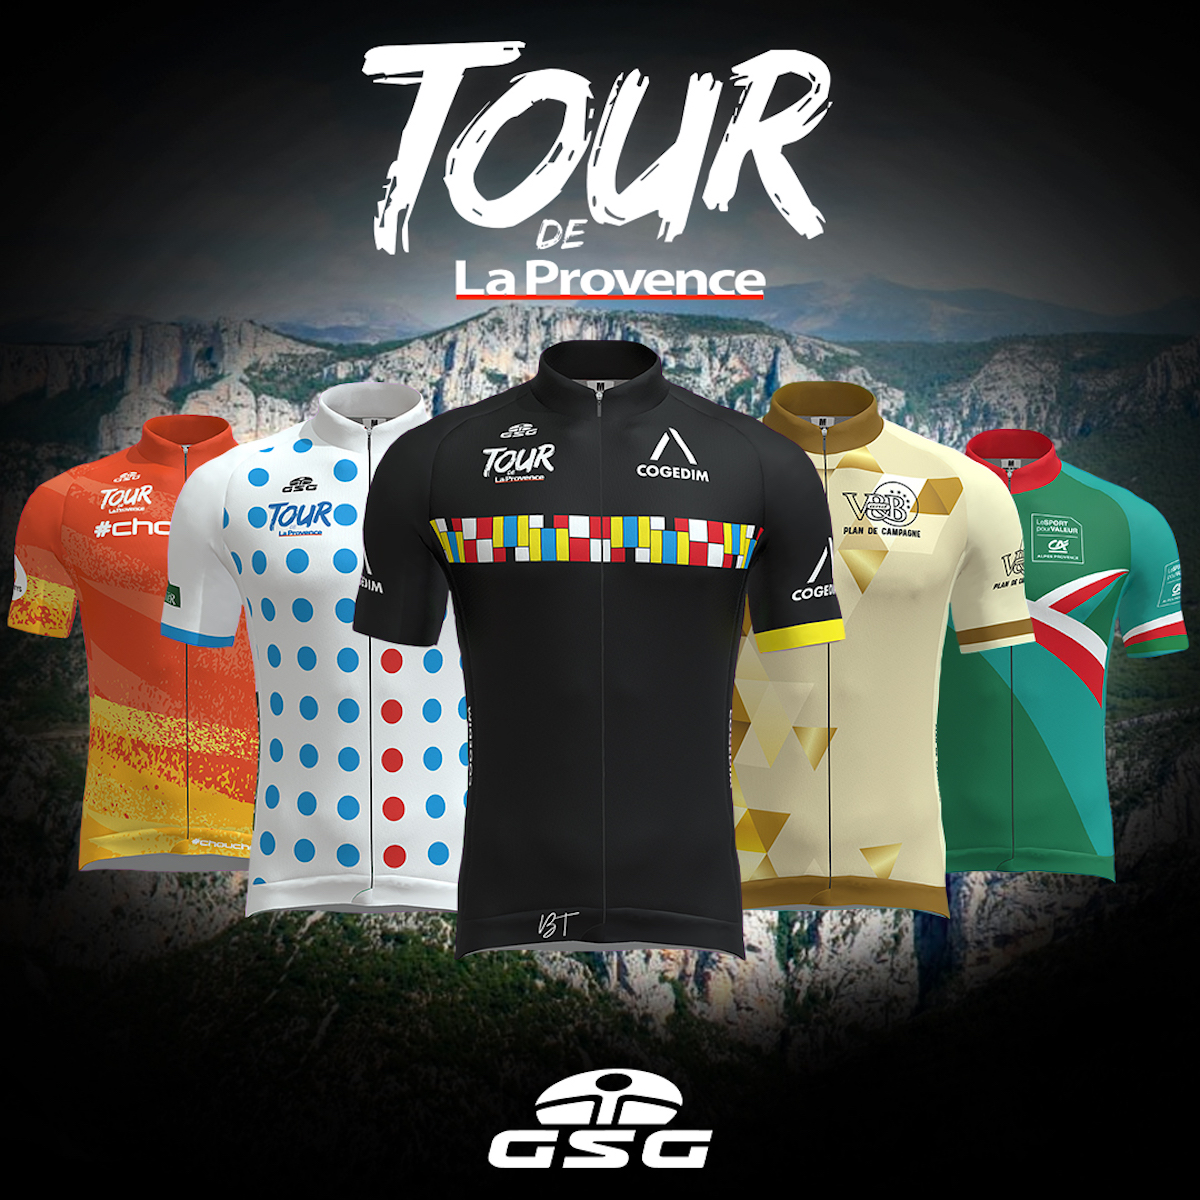 GSG e Tour de La Provence